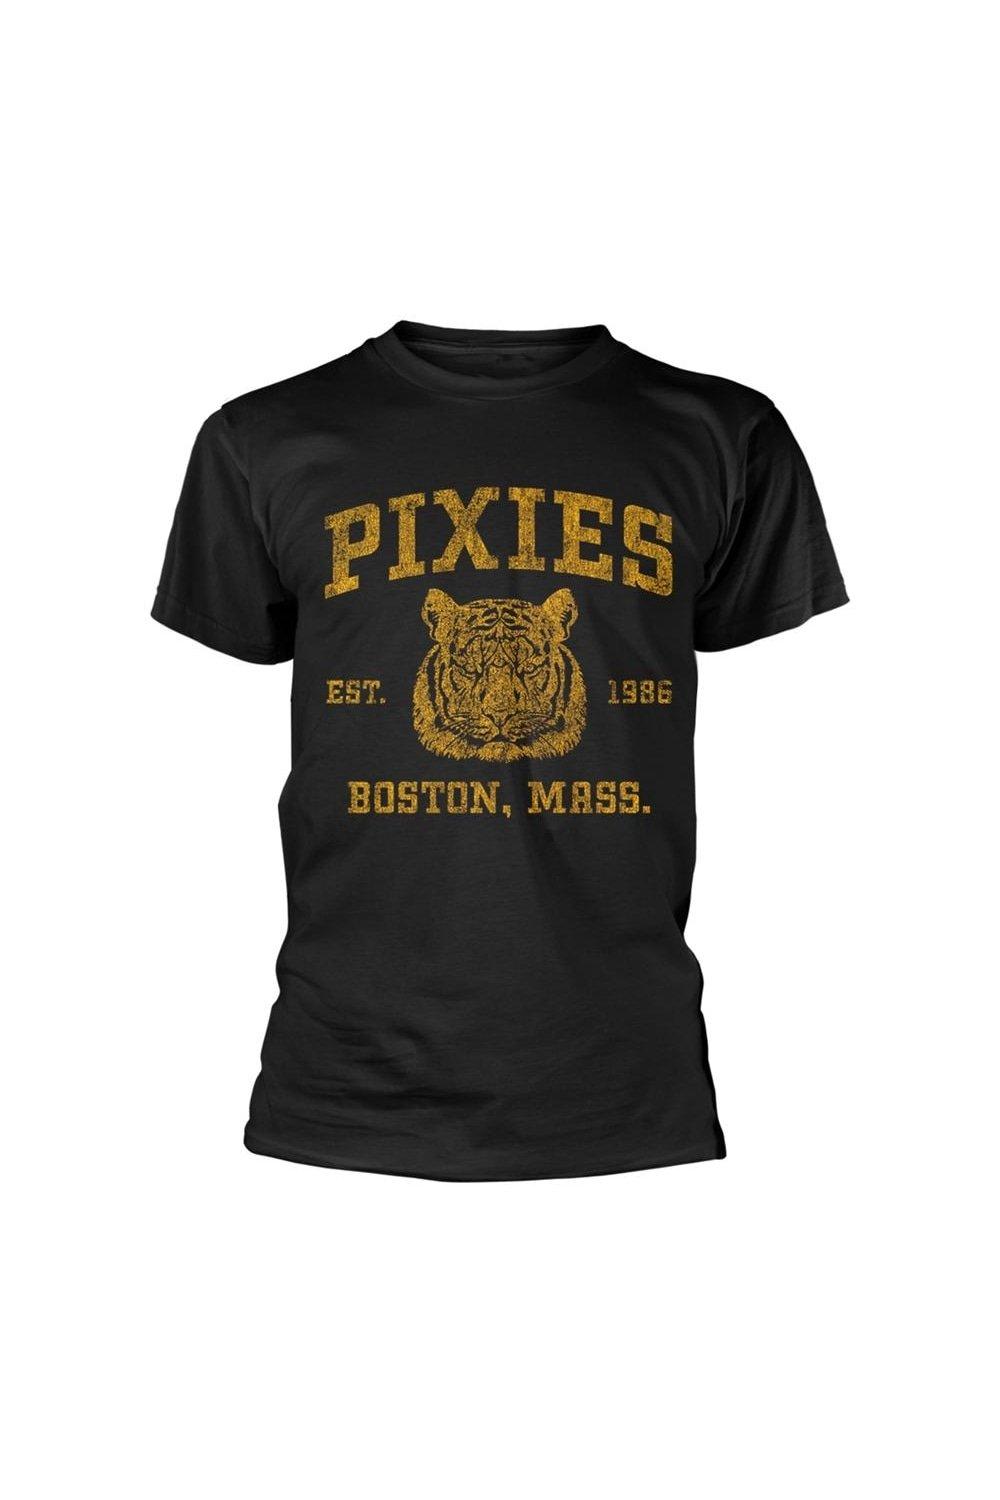 Футболка Phys Ed Pixies, черный